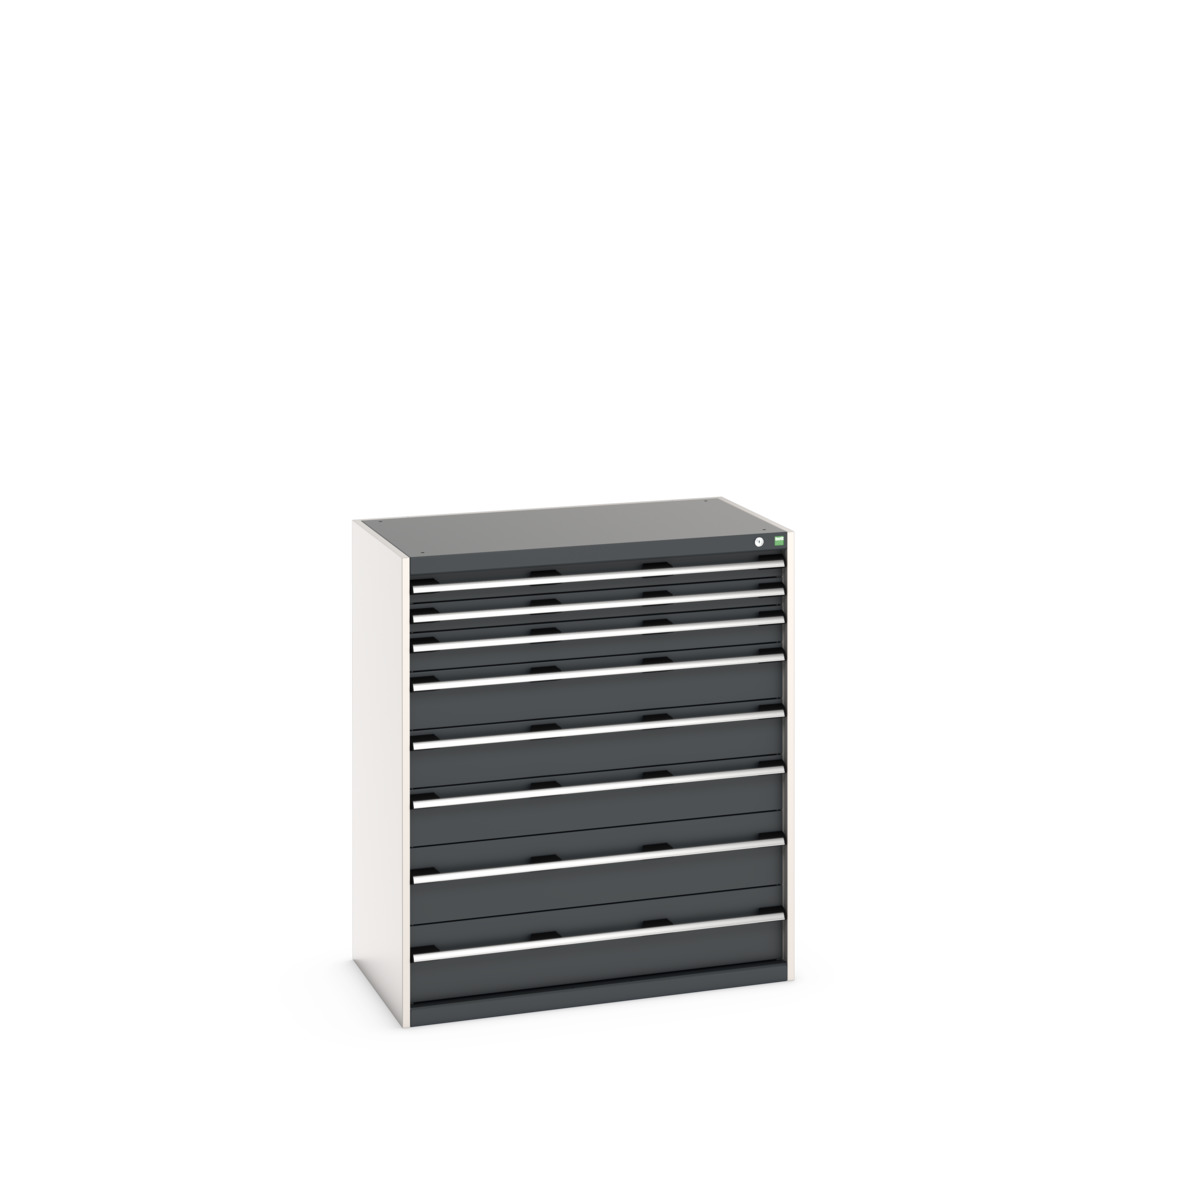 40021040.19V - cubio drawer cabinet